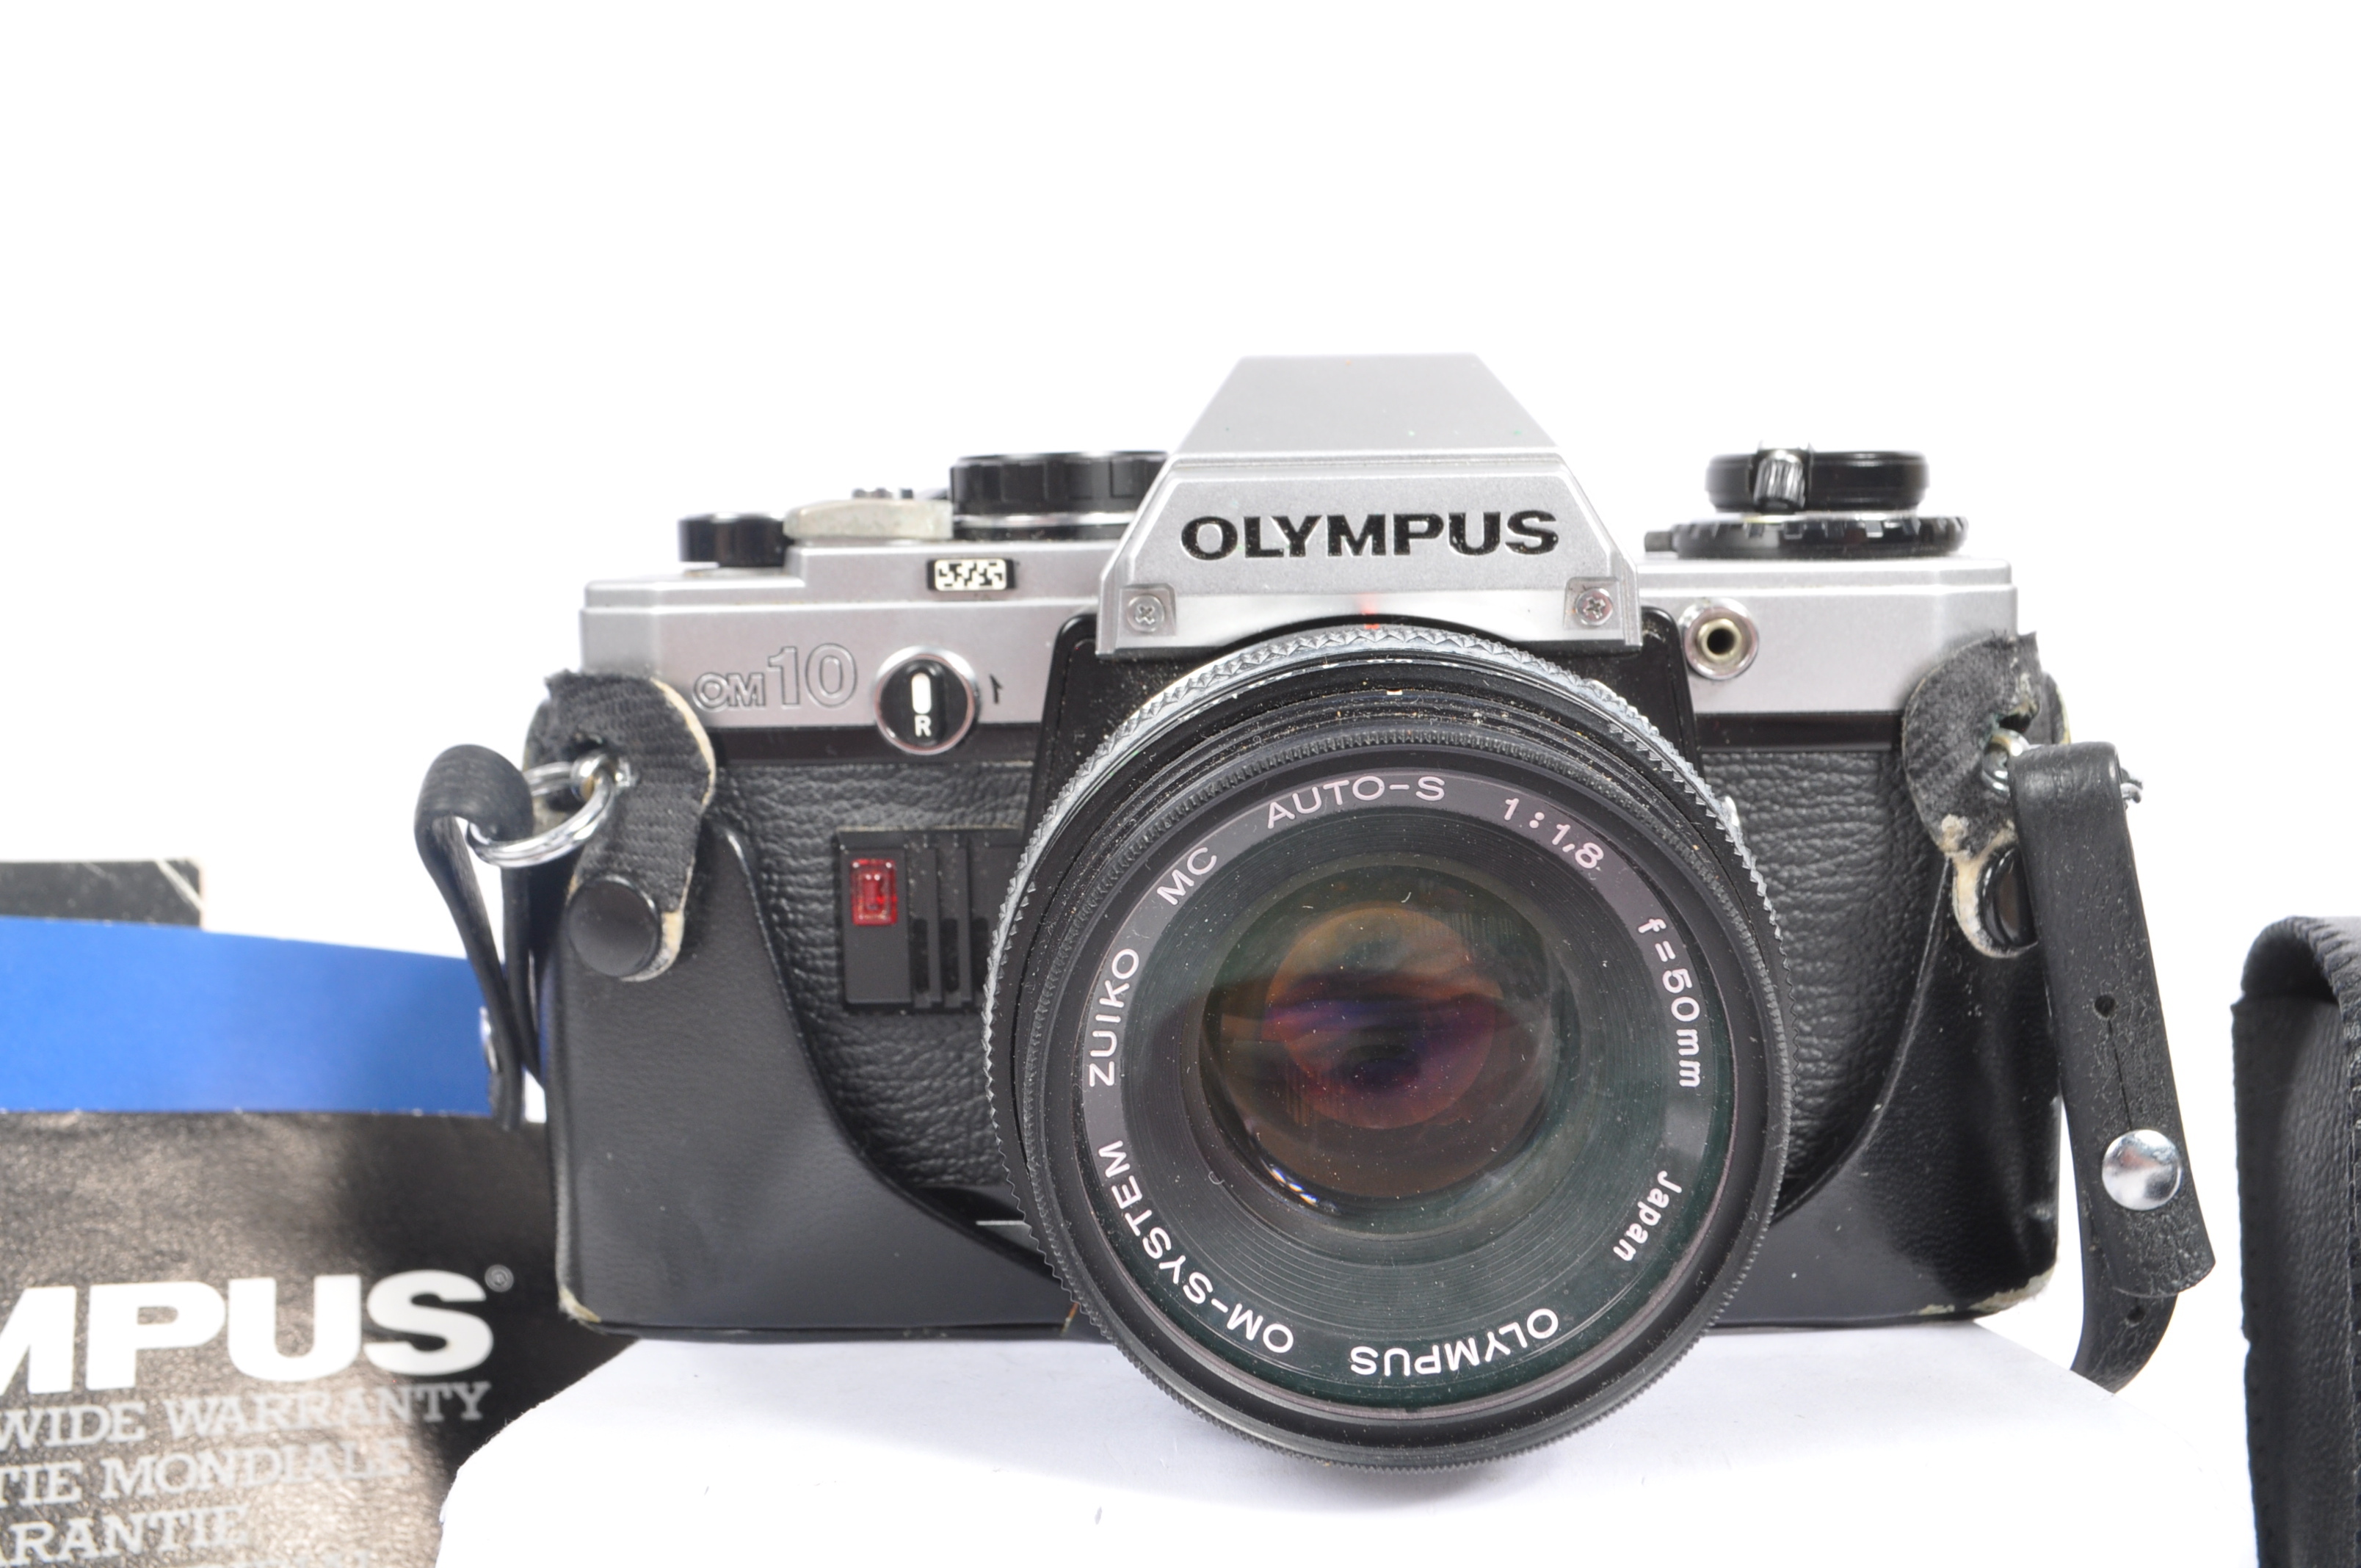 OLYMPUS - 1980S OM10 35MM SLR CAMERA - Image 2 of 7